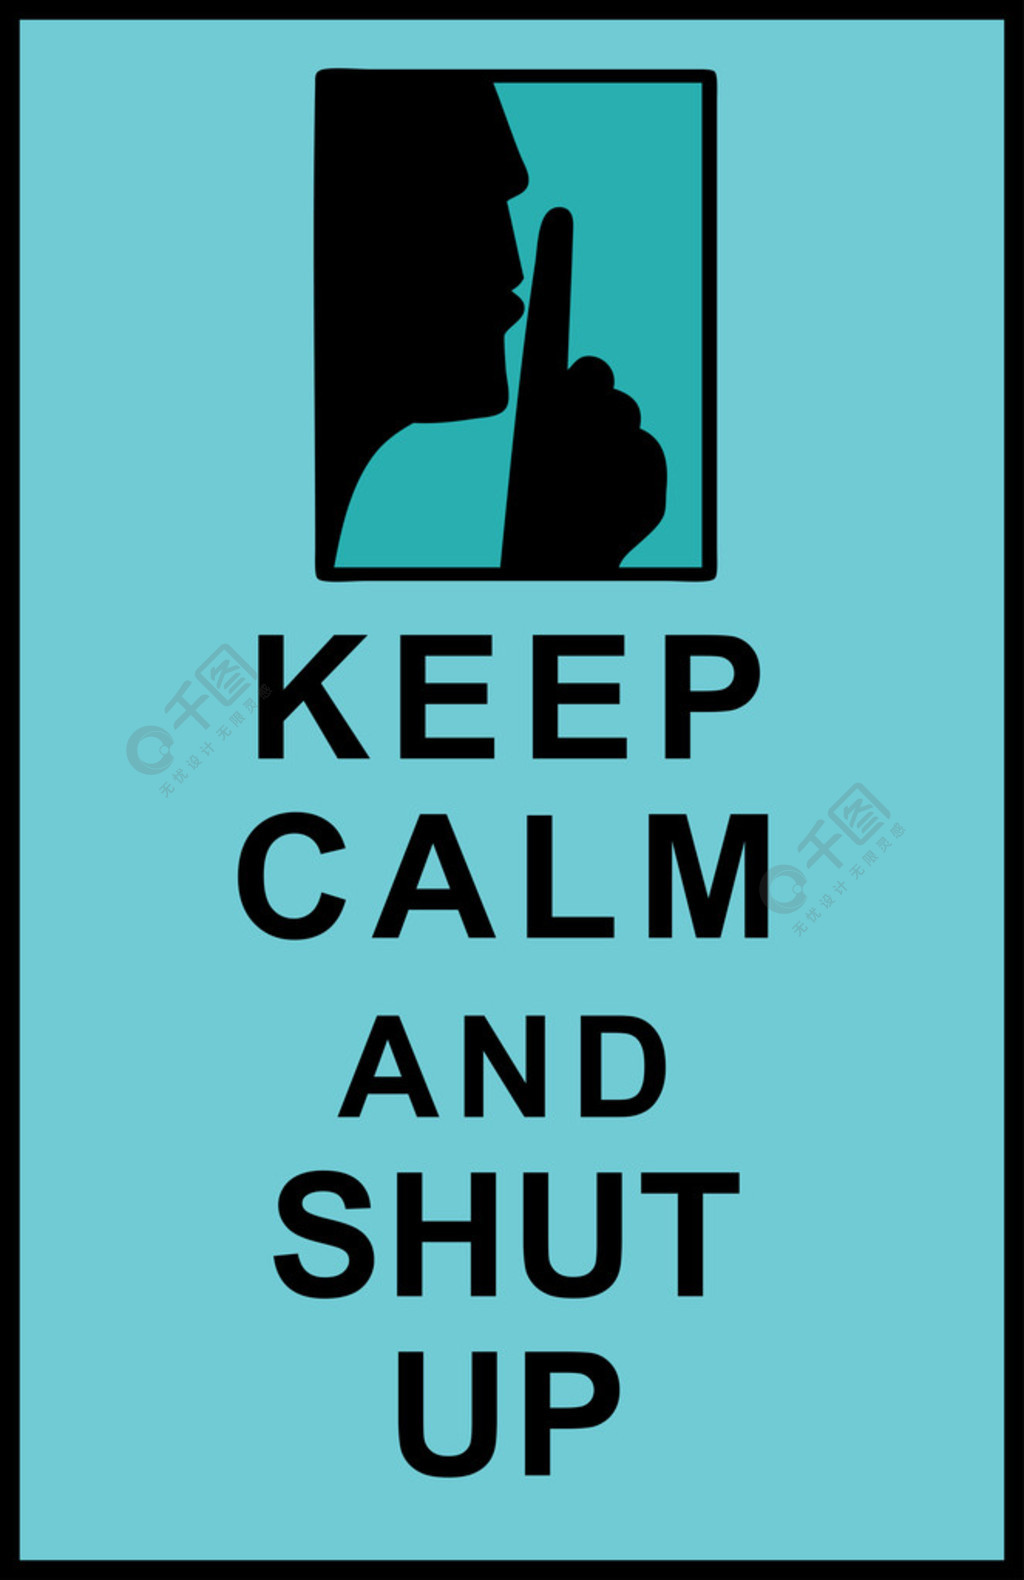 Slap Emoji PNG Image, Slap Emoji To Shut Up, Hit People, Face Slap ...